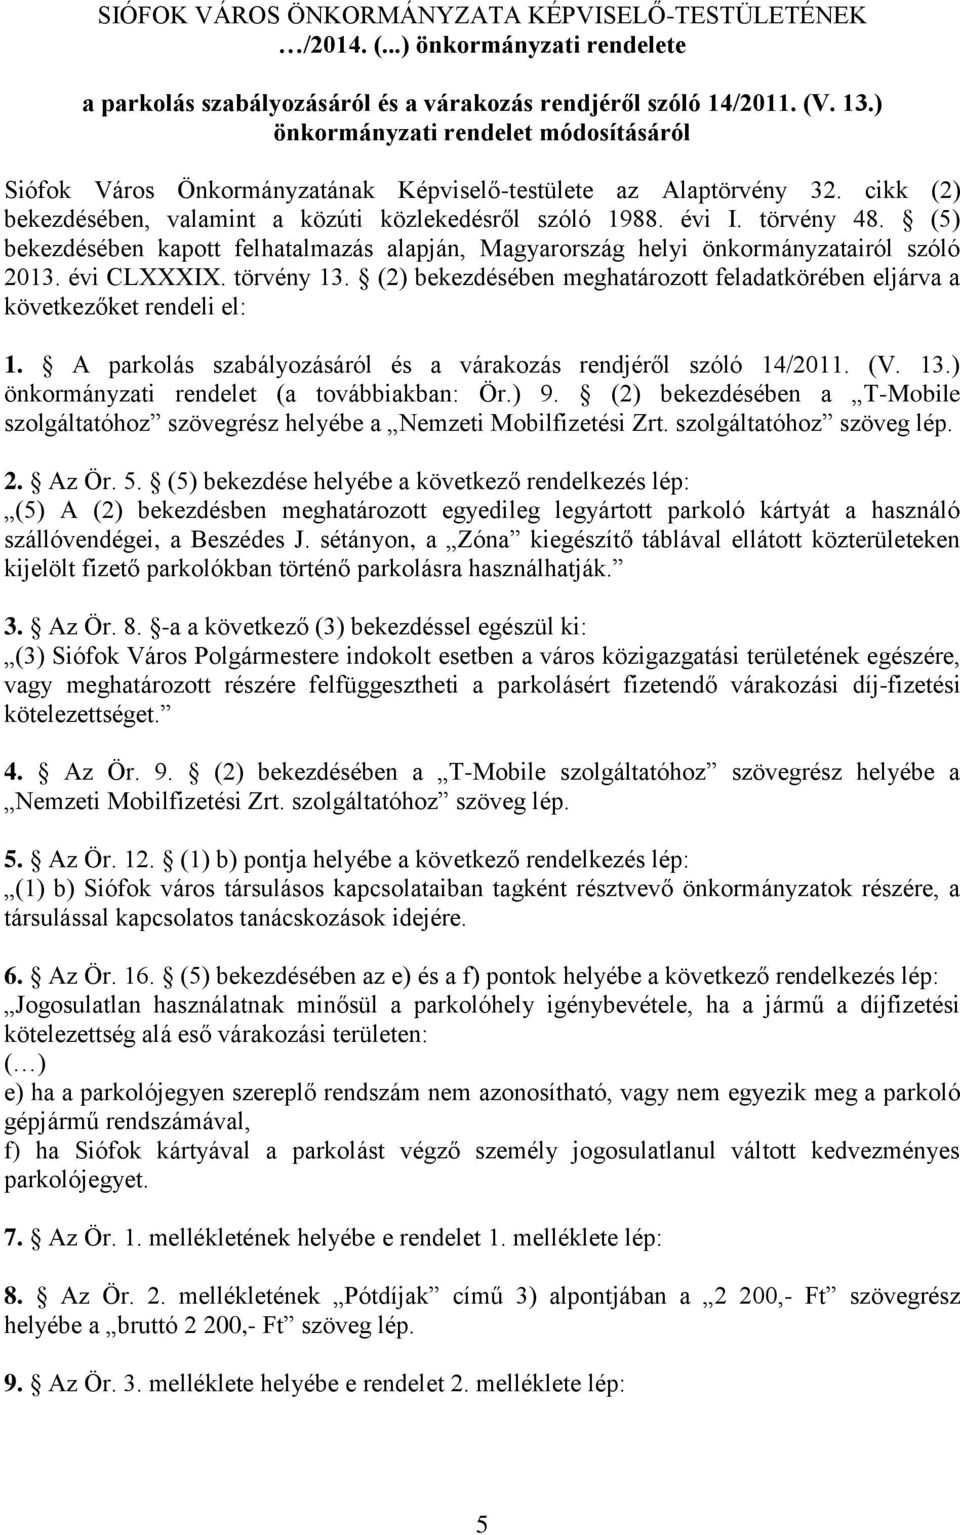 (5) bekezdésében kapott felhatalmazás alapján, Magyarország helyi önkormányzatairól szóló 2013. évi CLXXXIX. törvény 13.